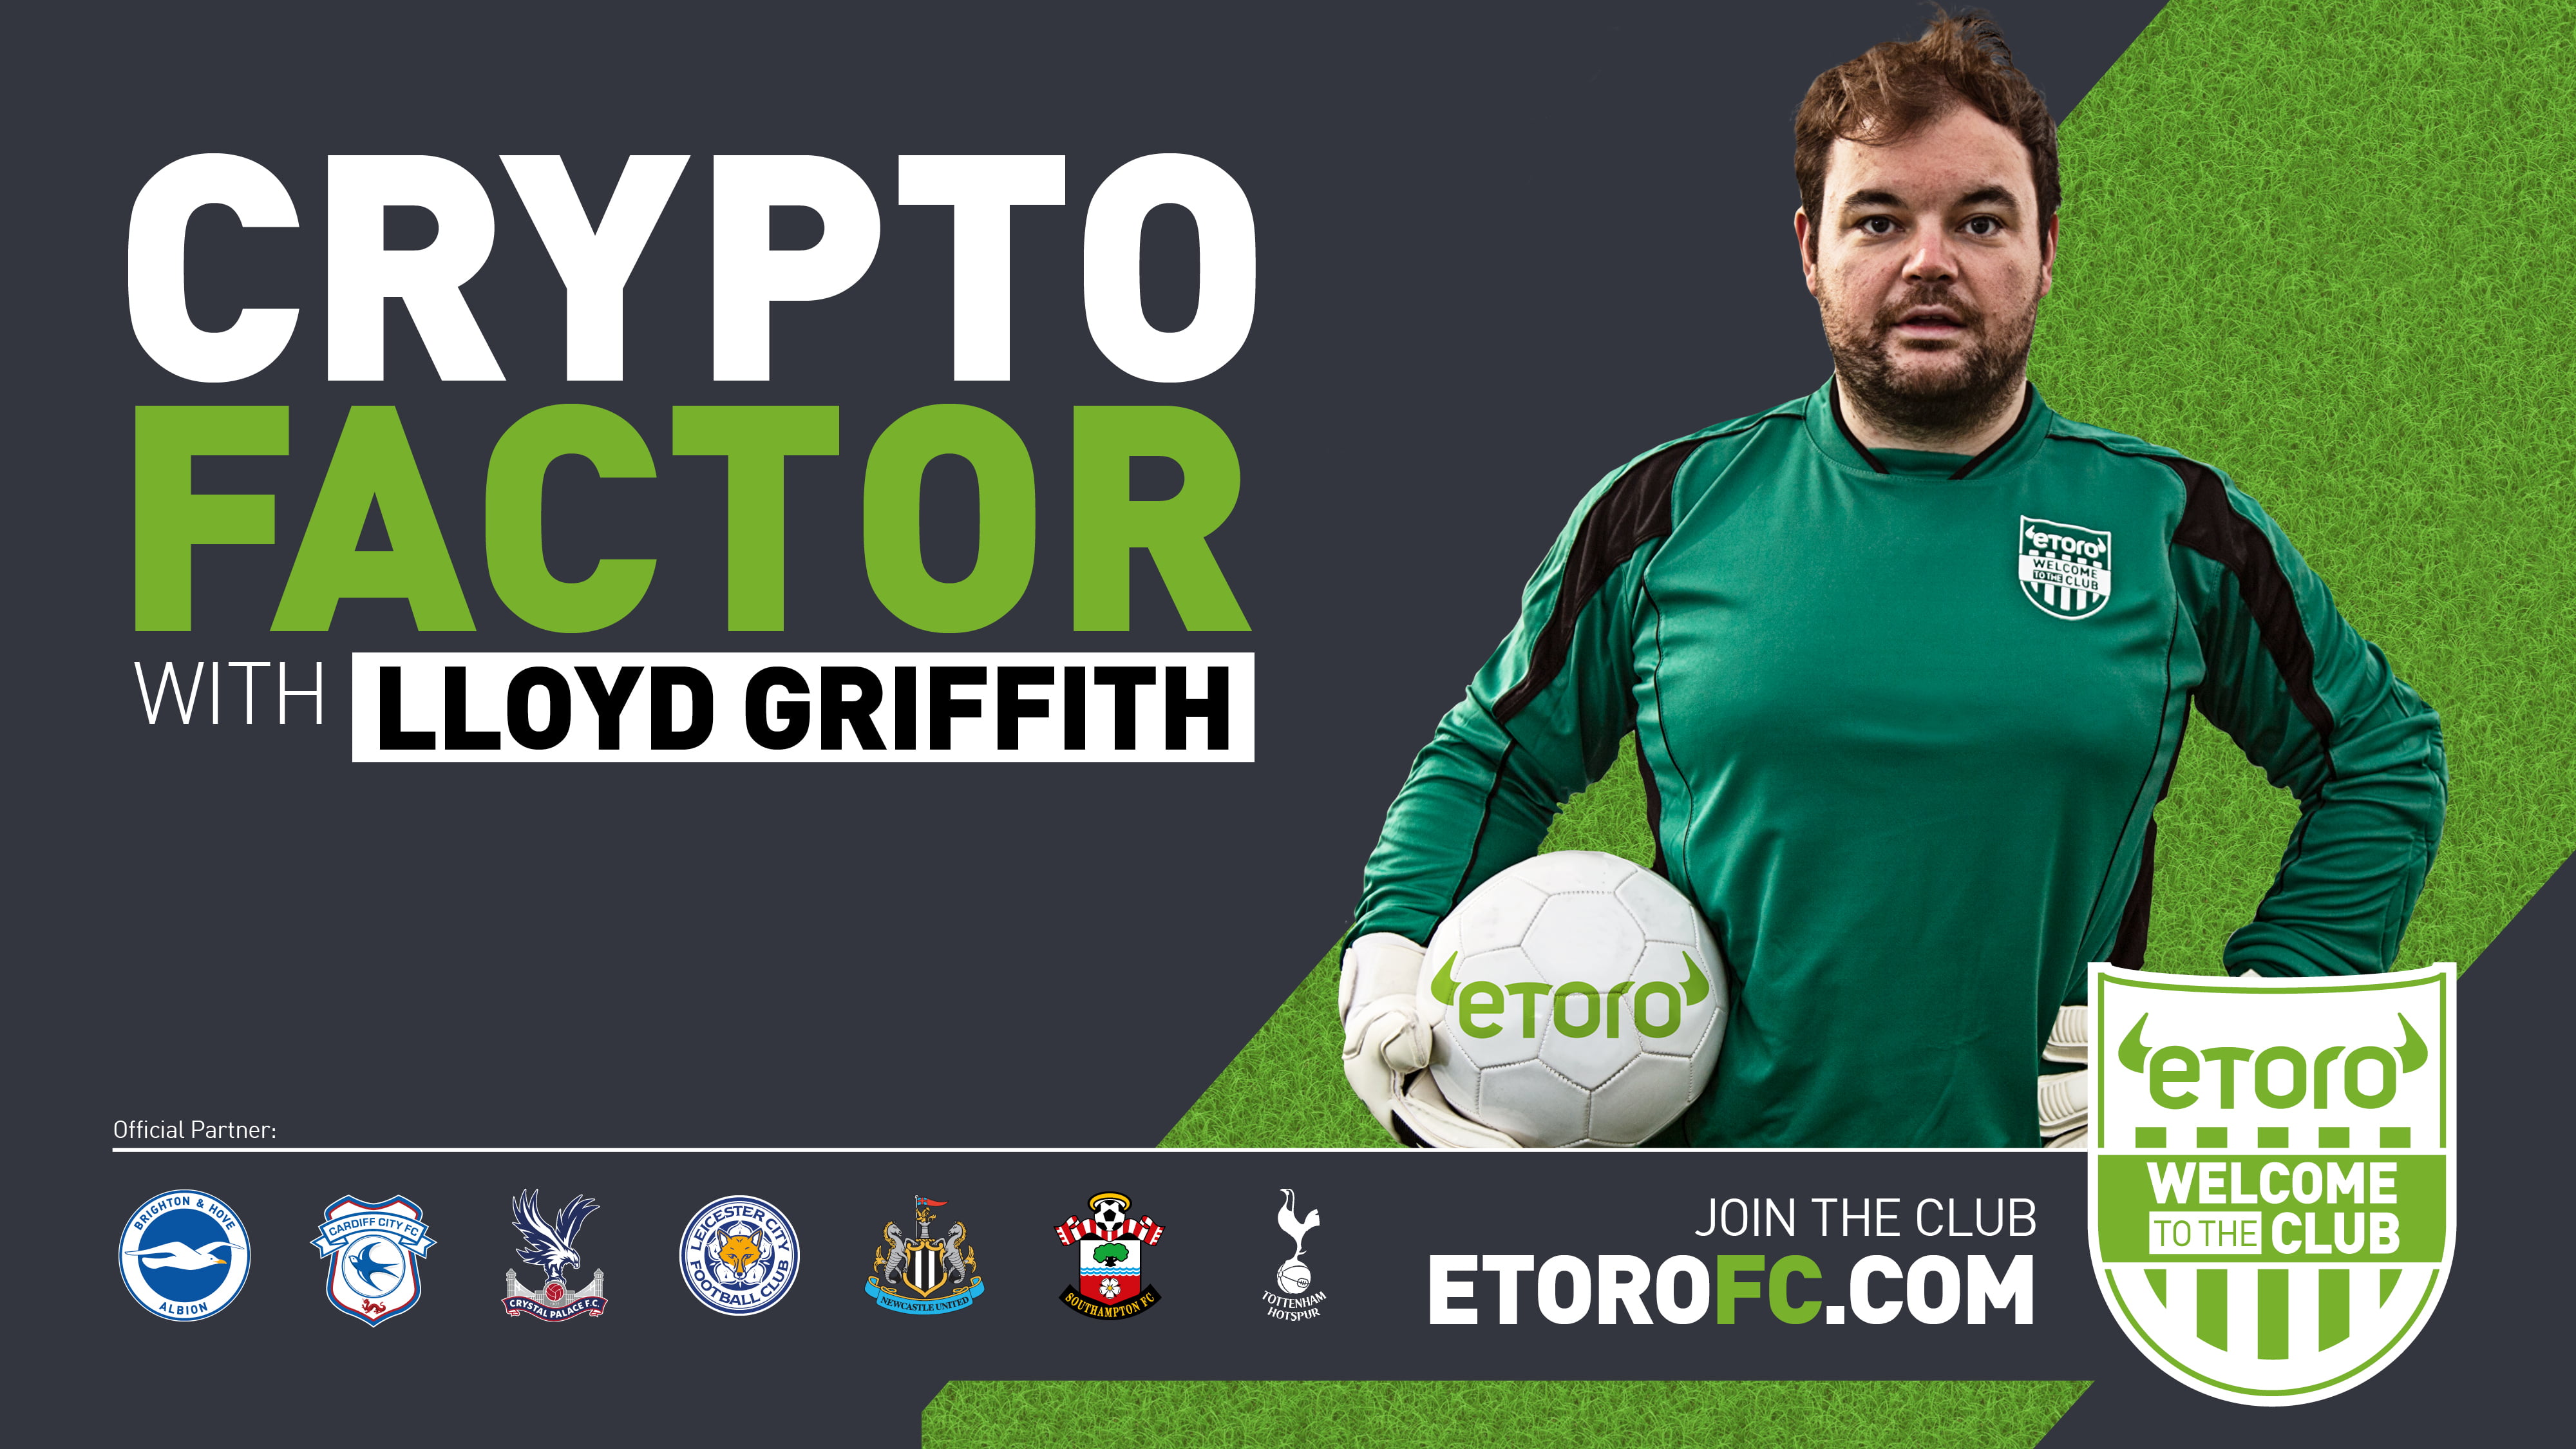 eToro Launches #WelcomeToTheClub Premier League UK Campaign